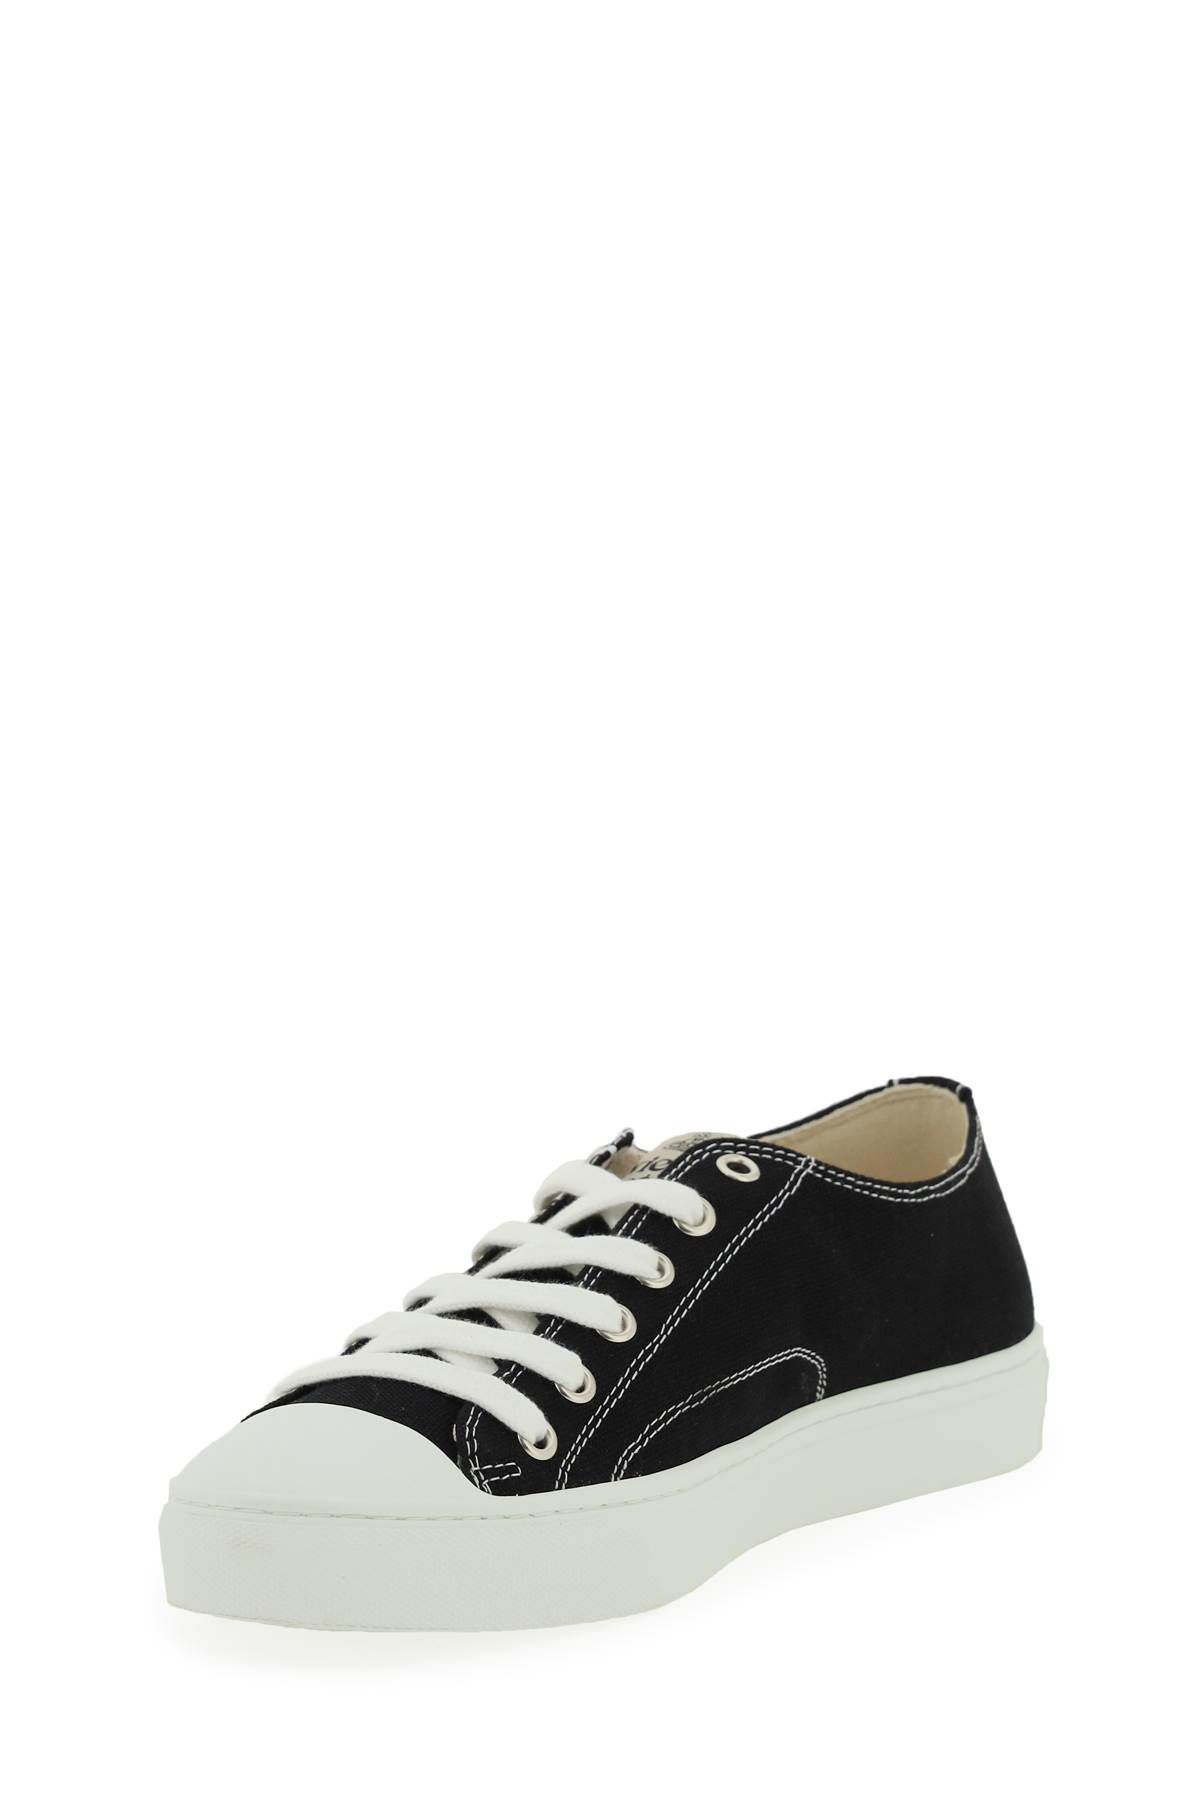 Shop Vivienne Westwood Plimsoll Low Top 2.0 Sneakers In Black